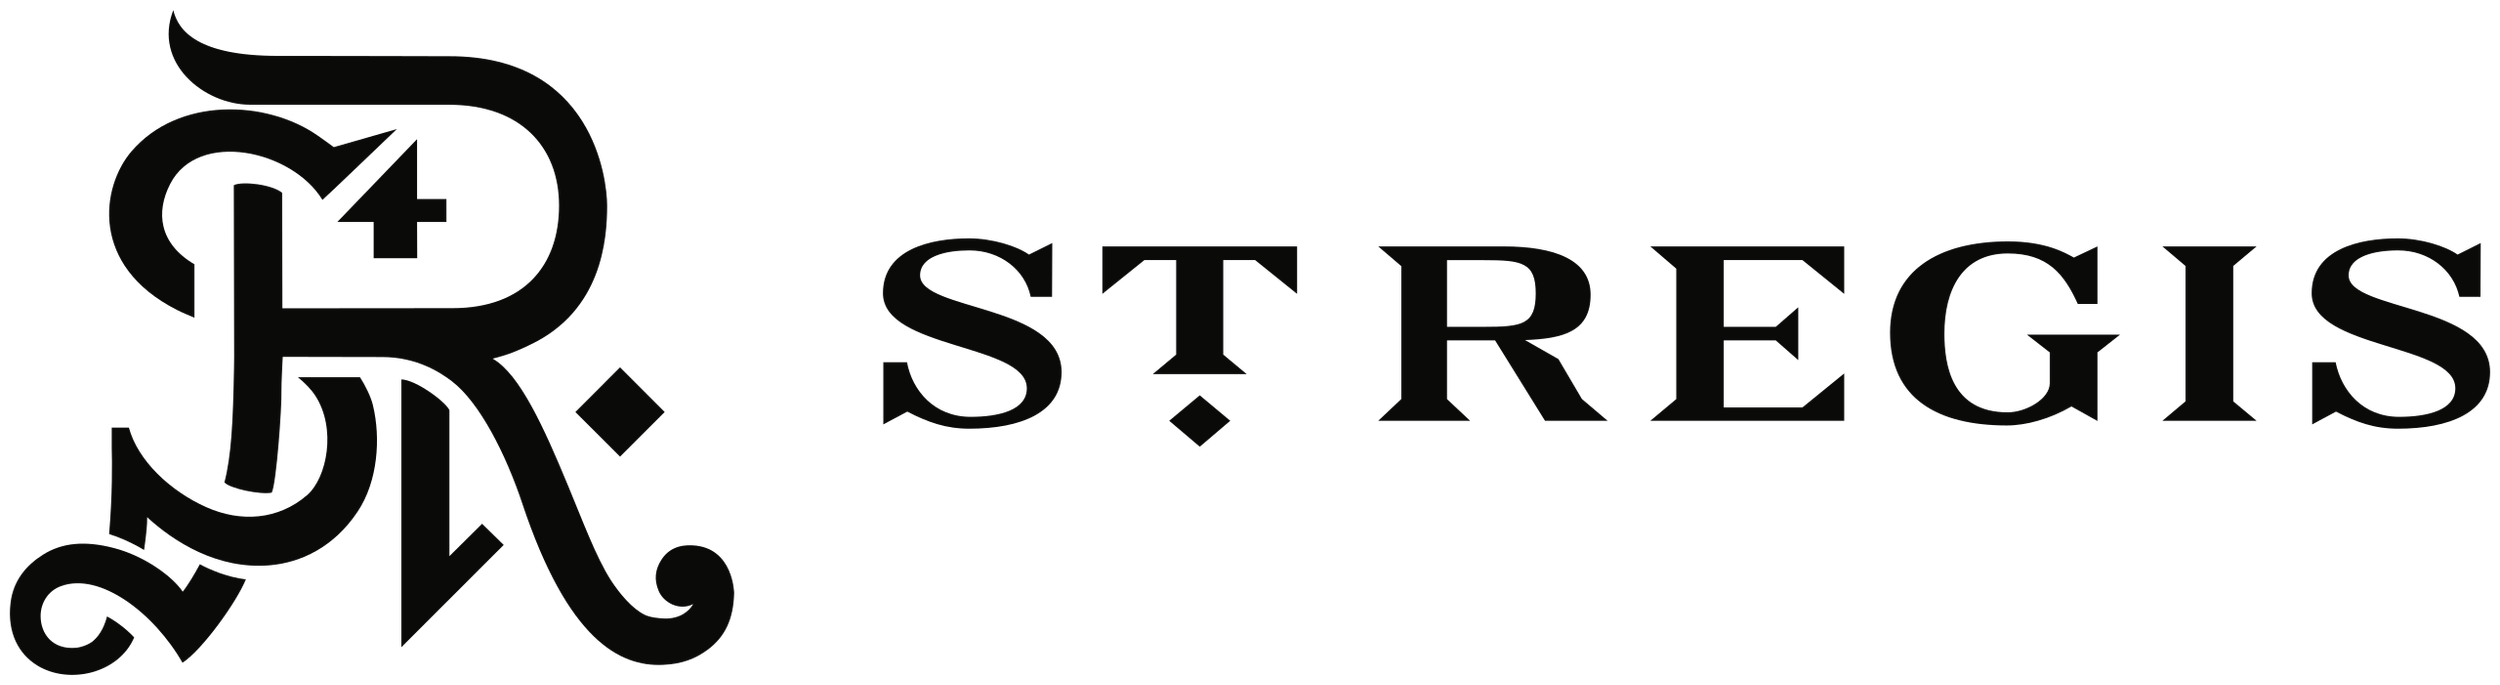 St._Regis_Hotels_&_Resorts_logo.svg.png